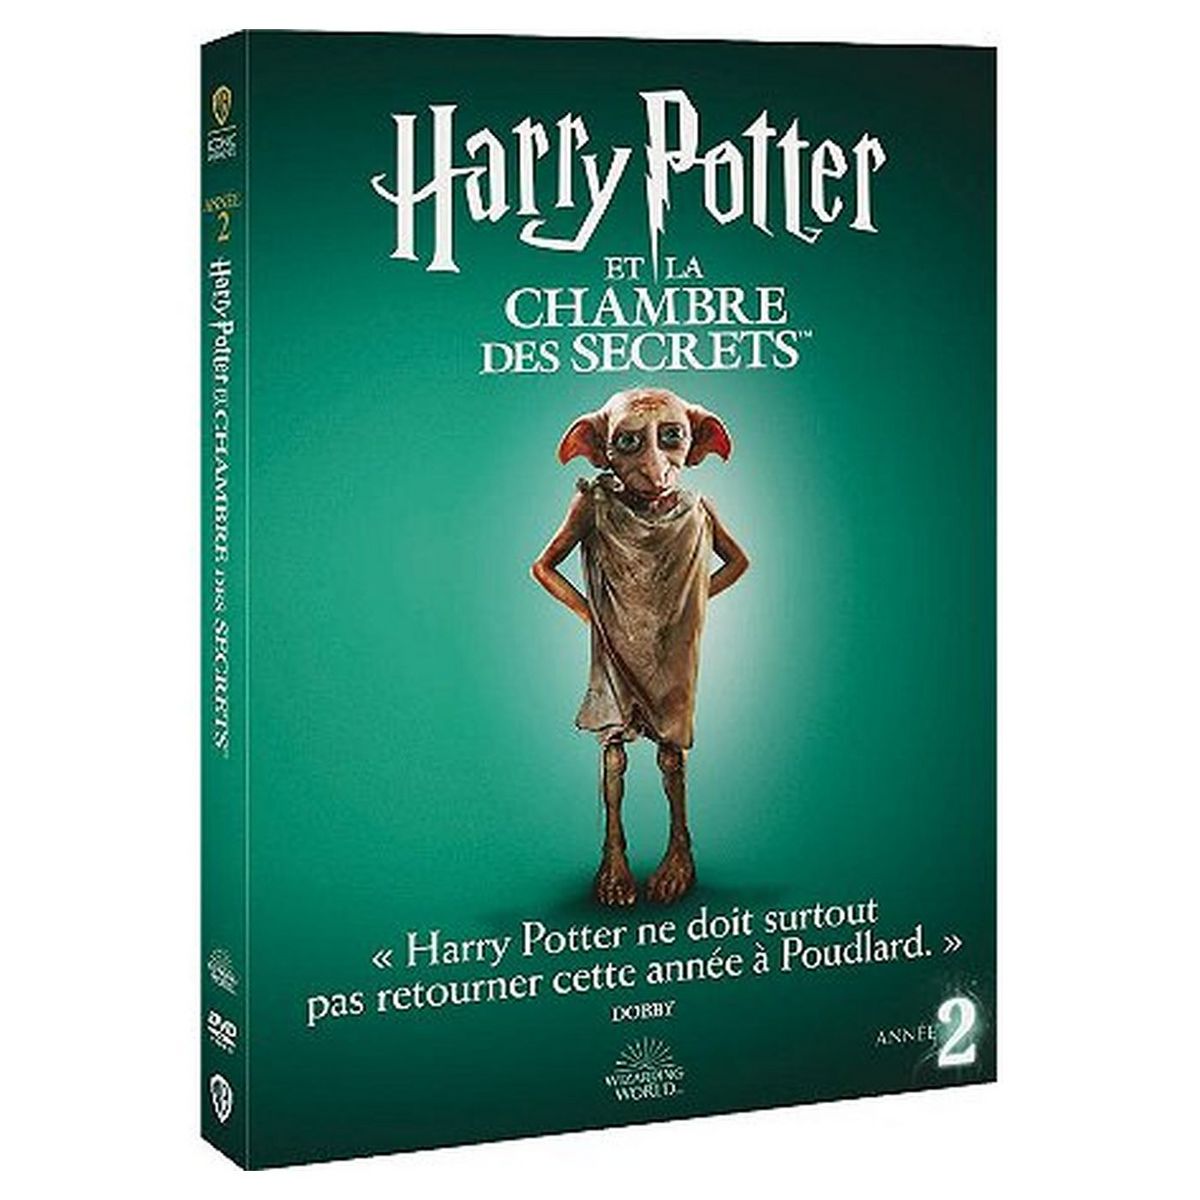 Harry Potter et la Chambre des secrets : une Française recrée la